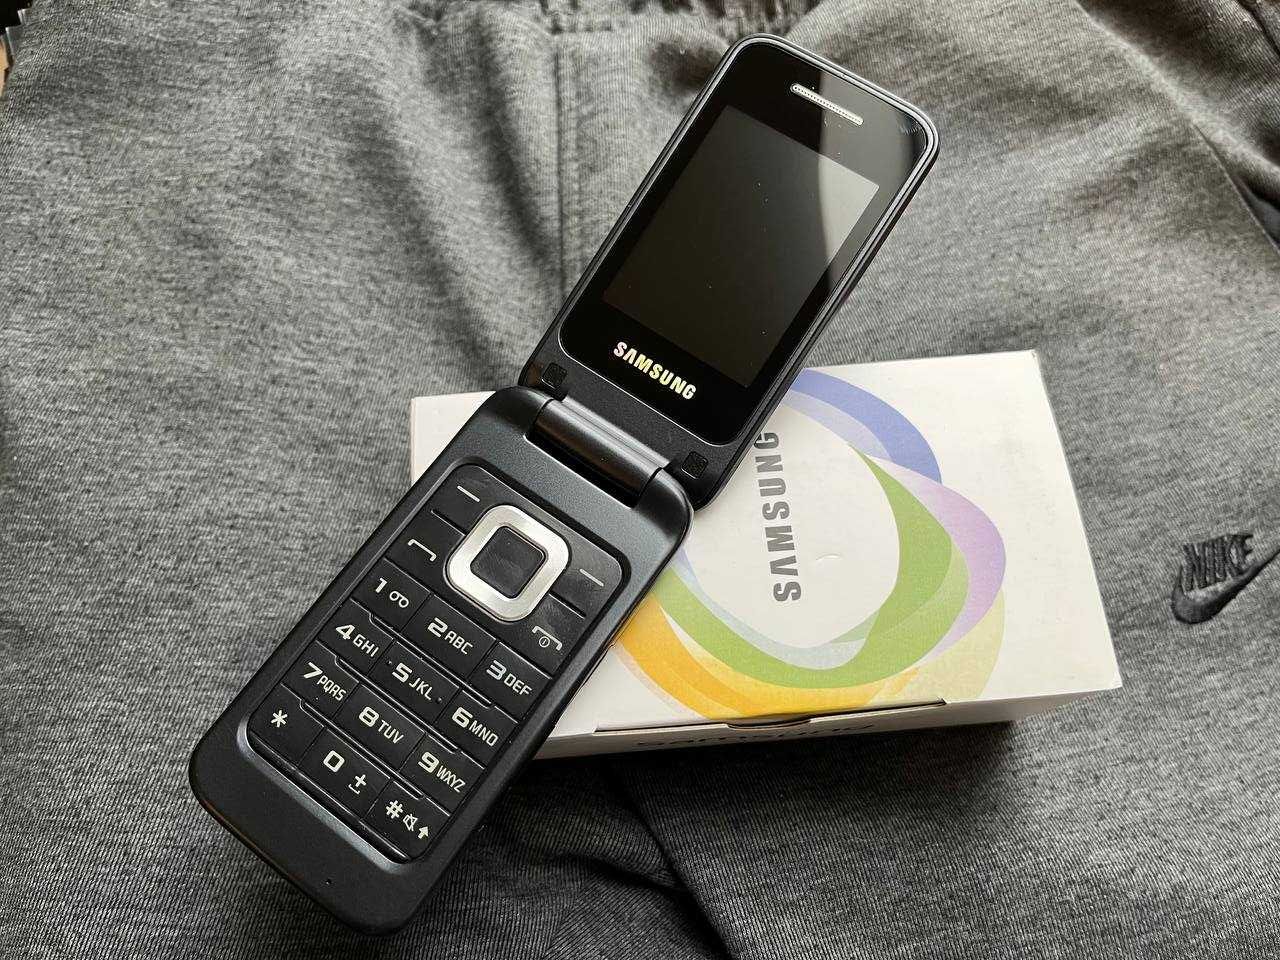 Samsung C3520  новый смартфон телефон из коллекции